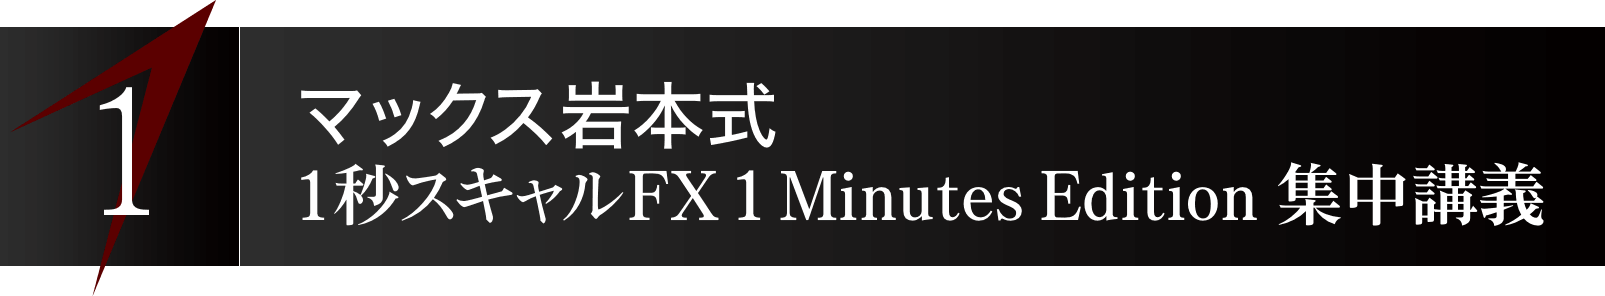 1. マックス岩本式『1秒スキャルFX - 1 Minutes Edition -』集中講義